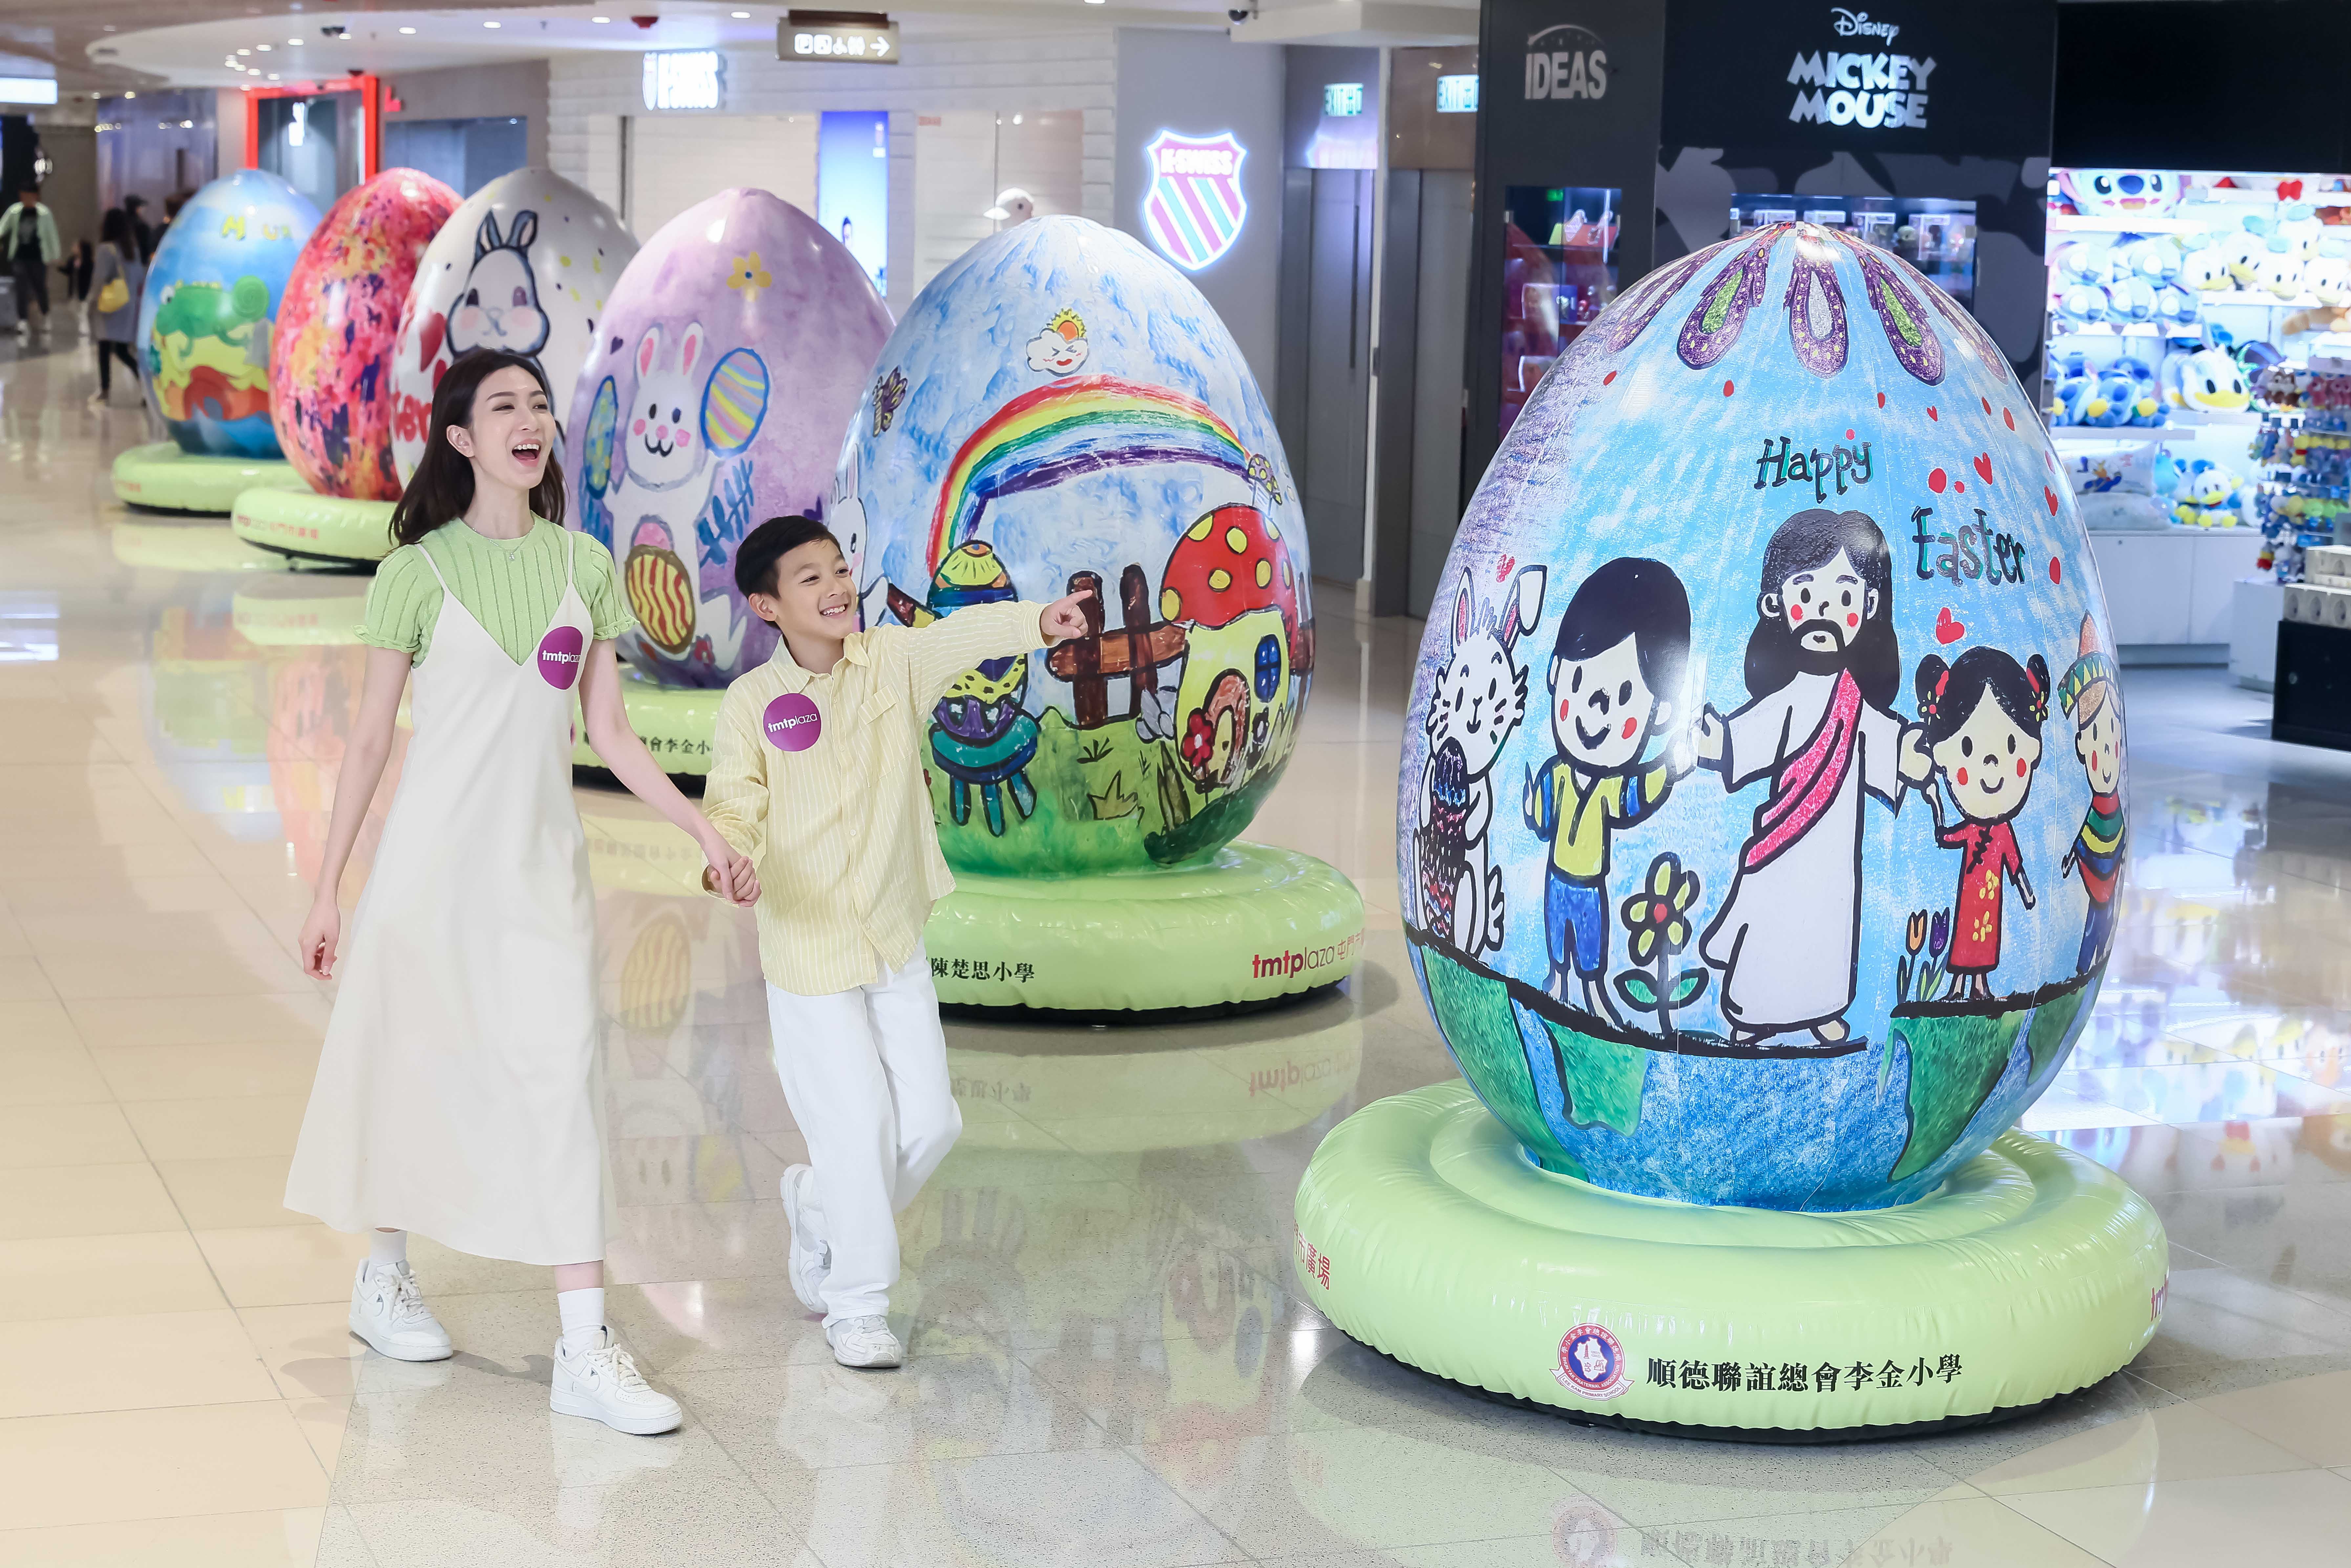 屯门市广场鼓励艺术发展 18只屯门区小学生优秀复活蛋作品巨大化于「复活蛋艺术走廊」展出